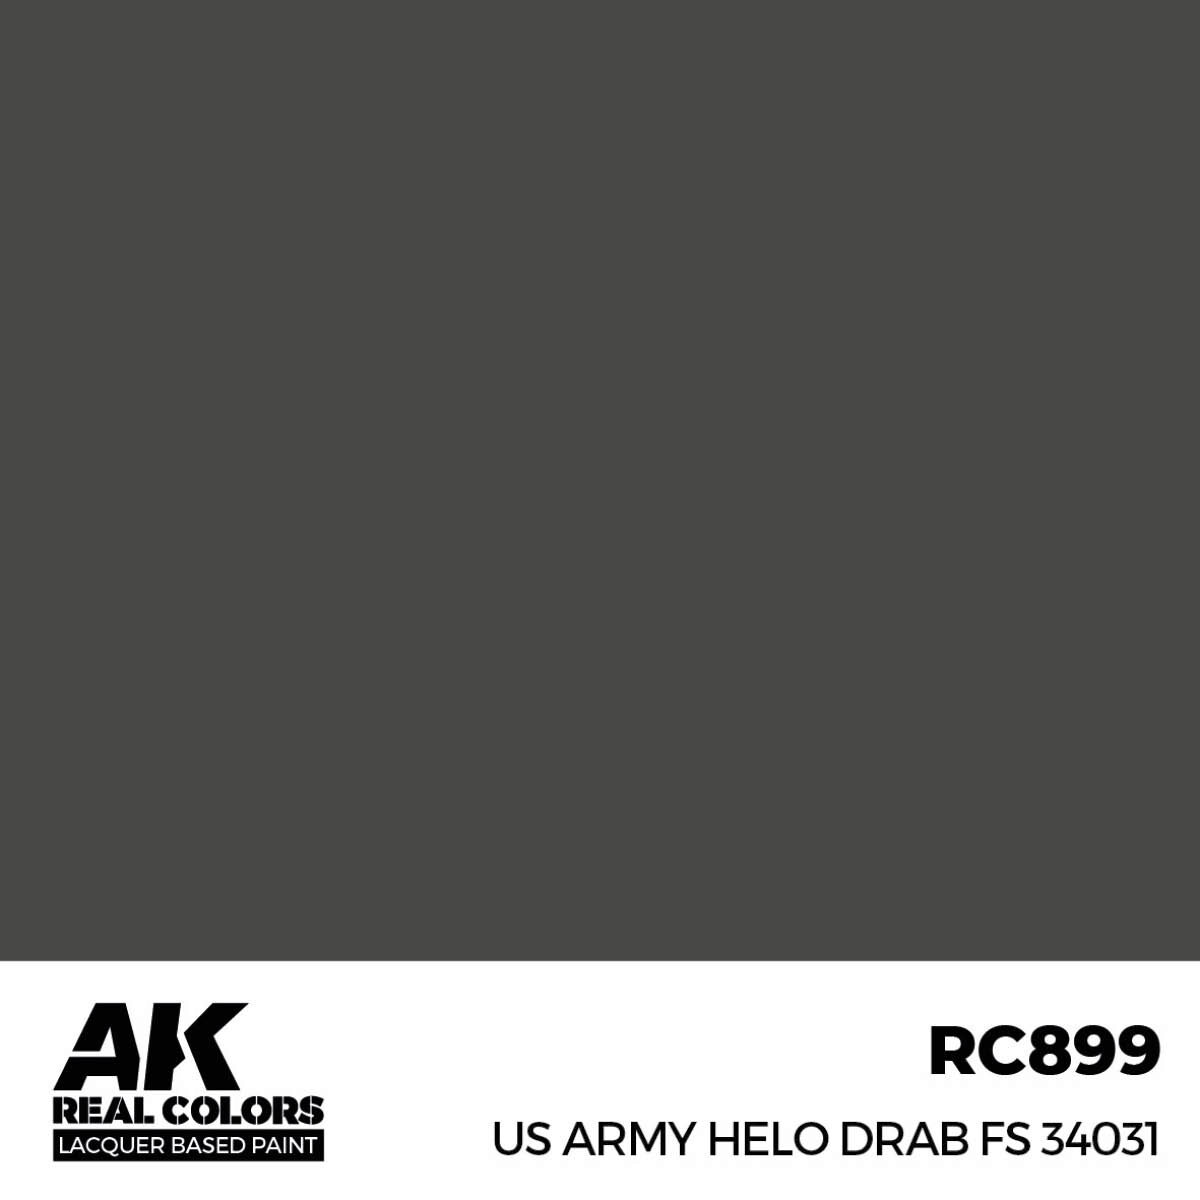 AK RC899 Real Colors US Army Helo Drab FS 34031 17 ml.